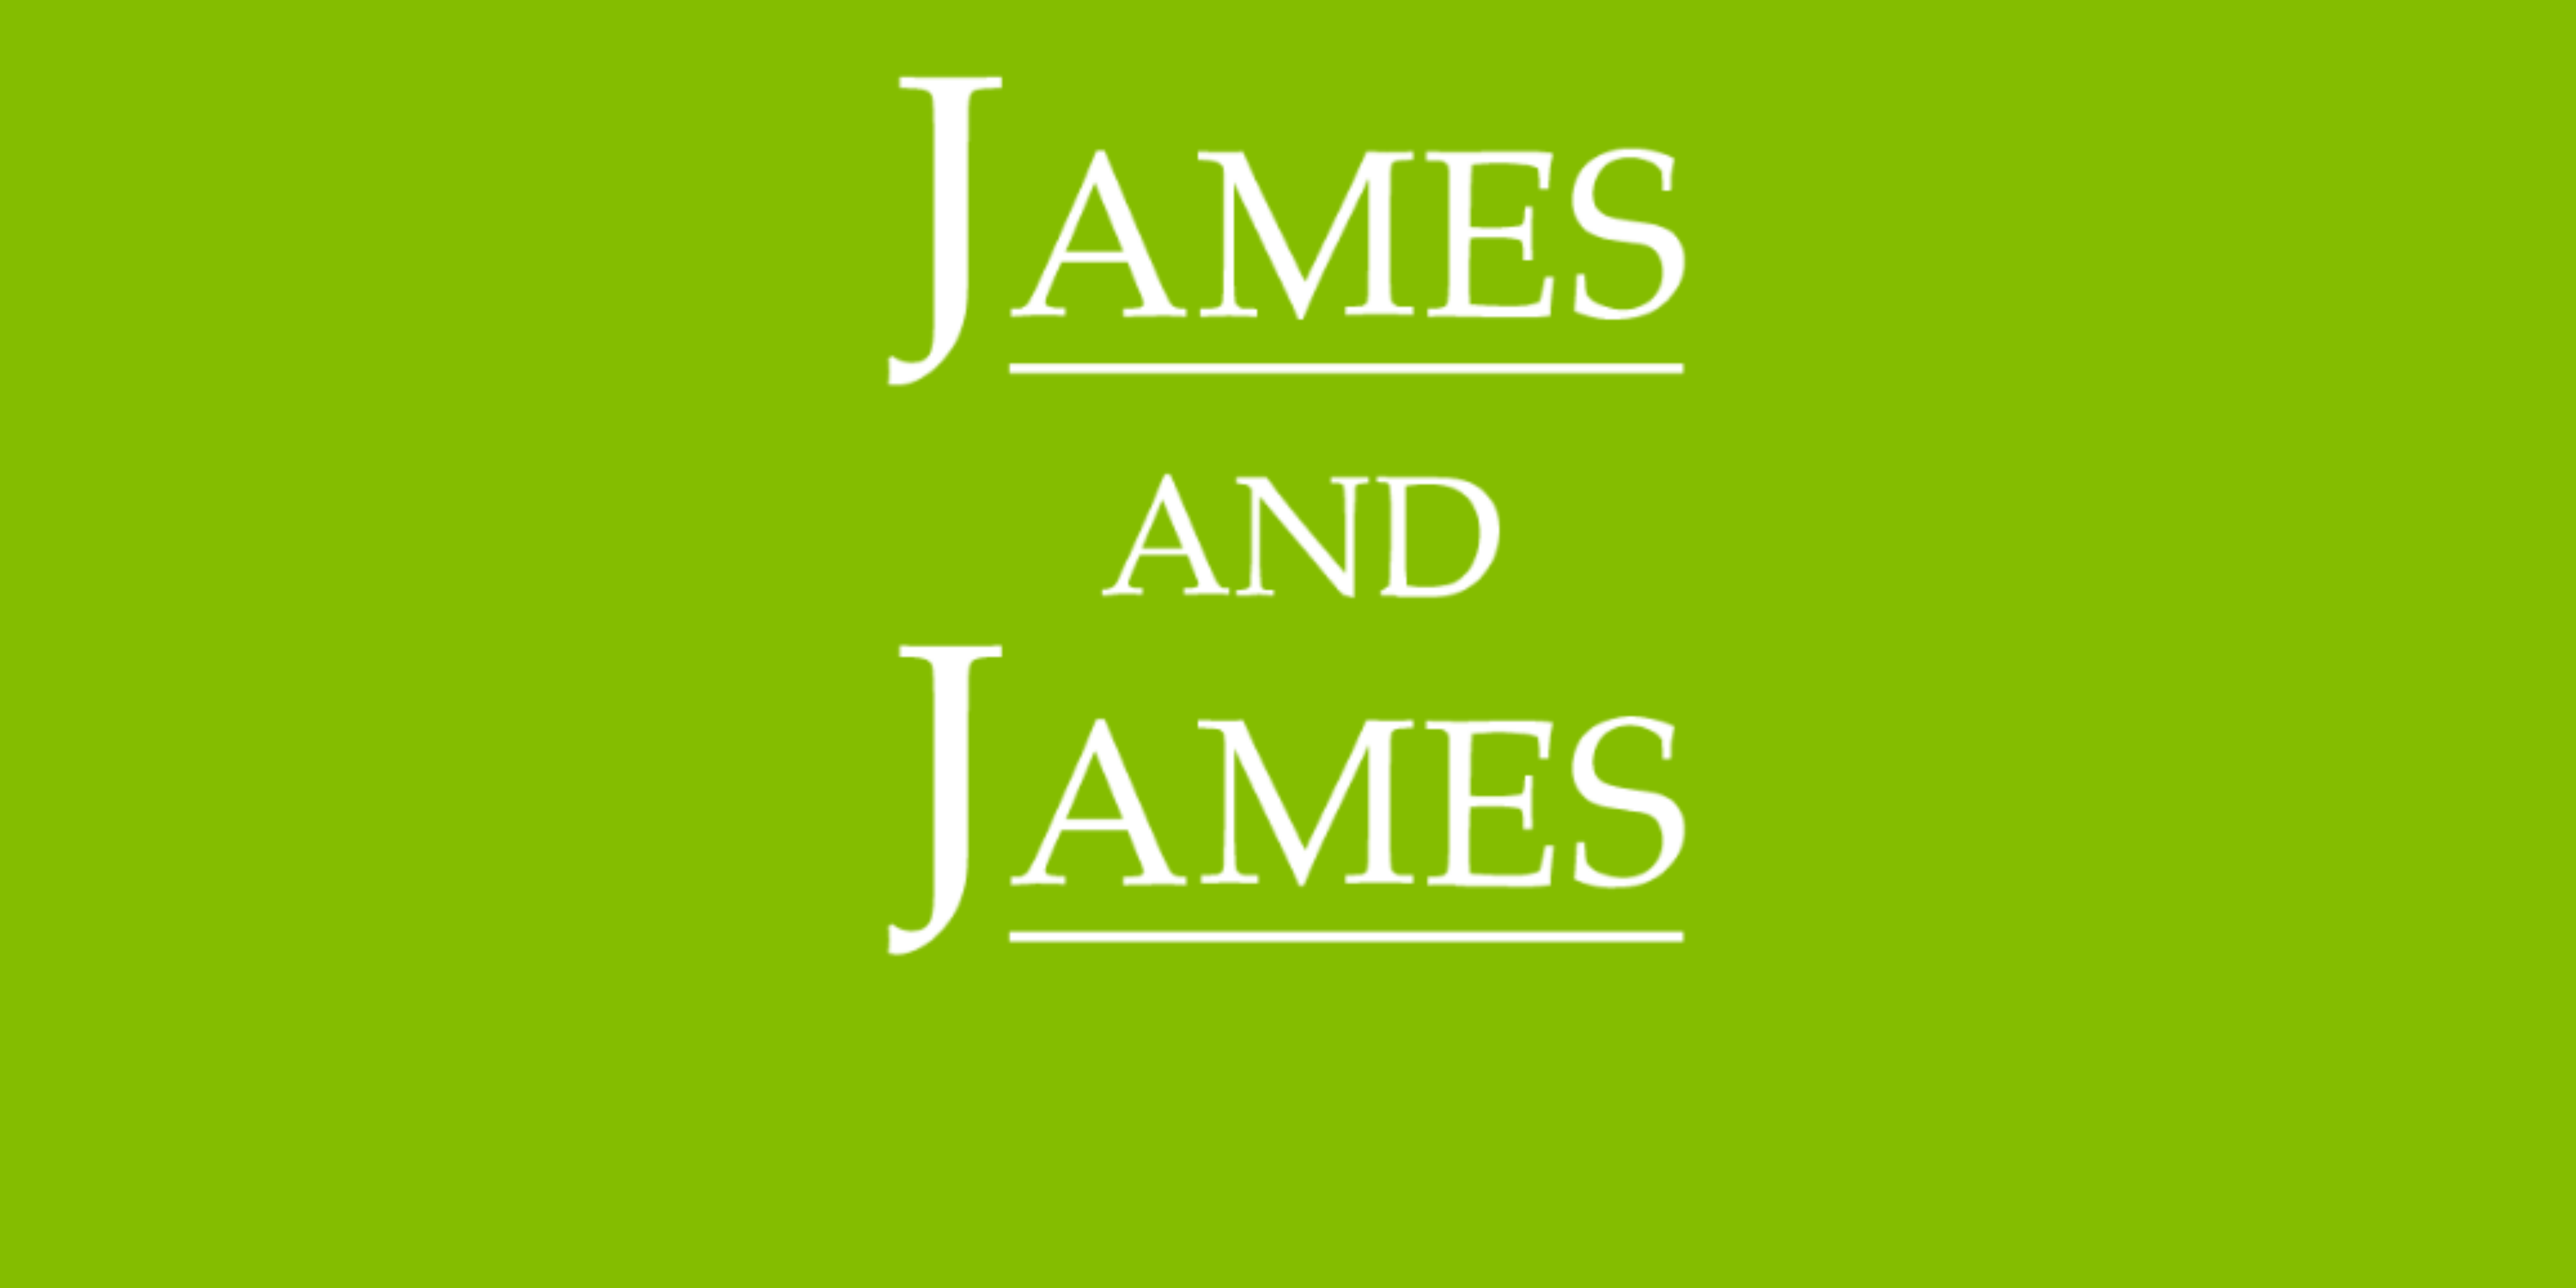 James and James logo